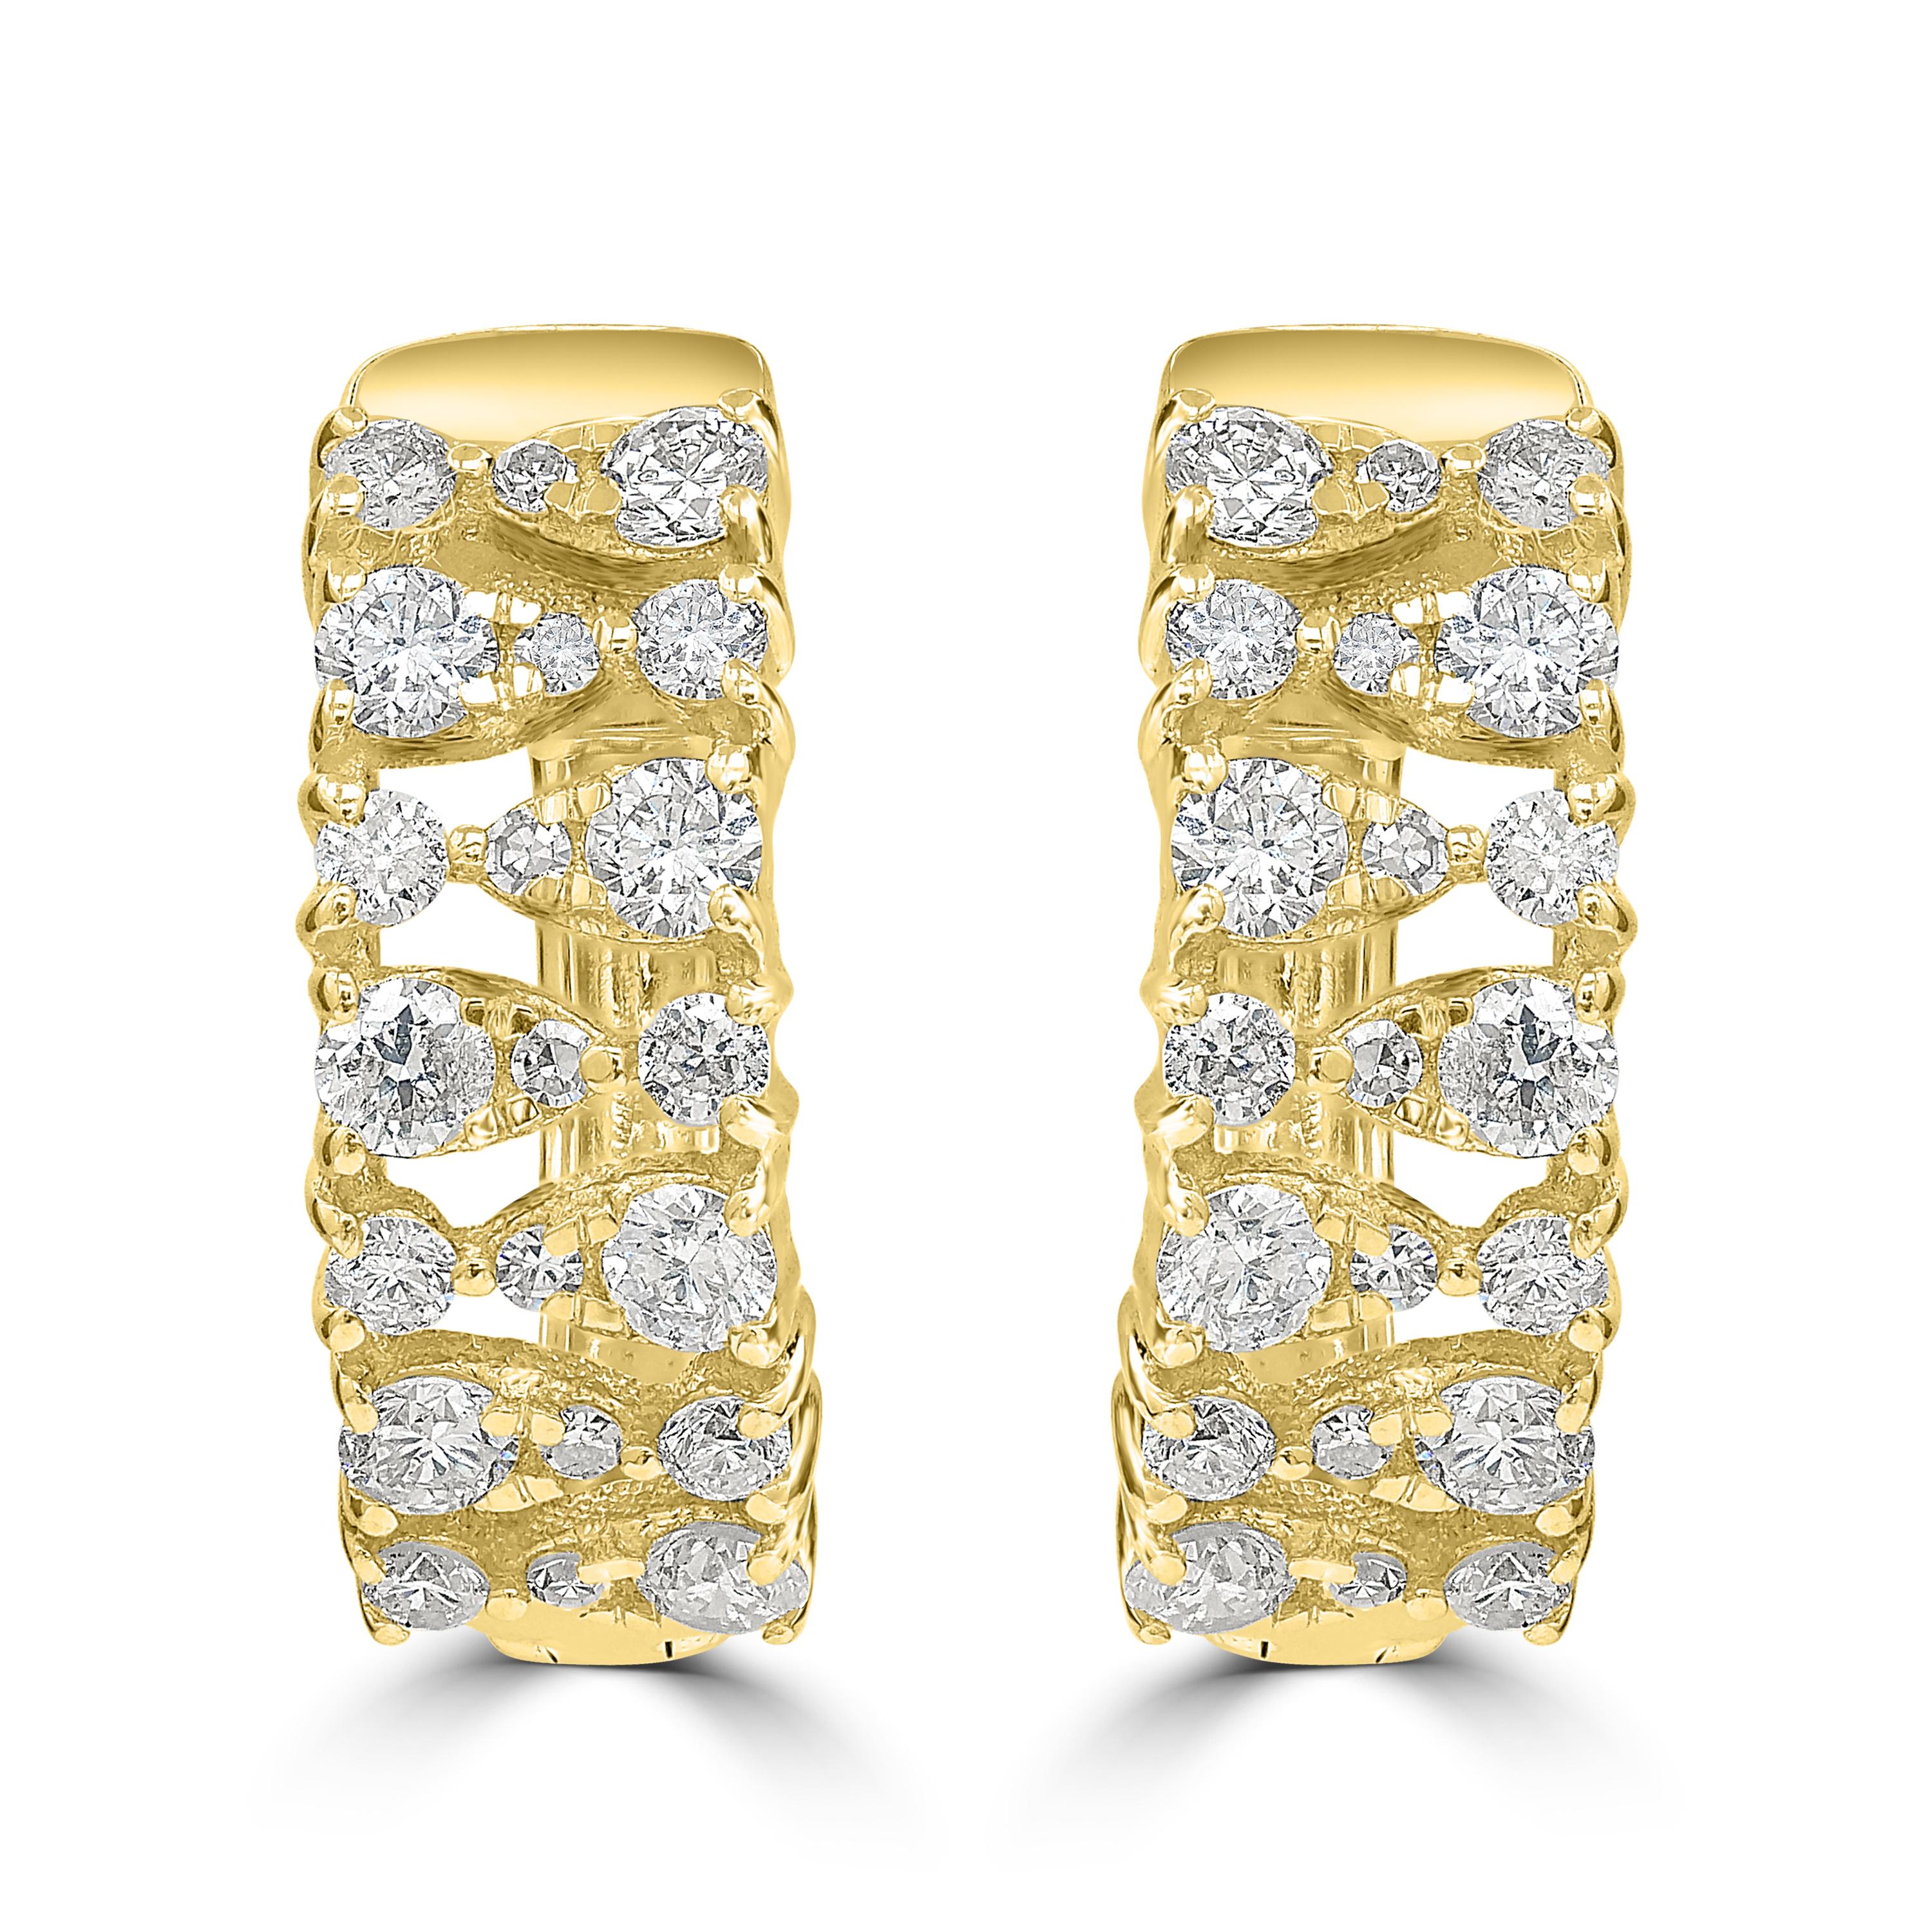 Ein zeitloses Design in 14K Gelbgold mit einem fließenden Strom von Brillanz. Diese ohrumschließenden Ohrringe sind mit runden Diamanten von 0,52 Karat in einem verstreuten Design besetzt. Diese Click it-Ohrringe sind bequem und elegant